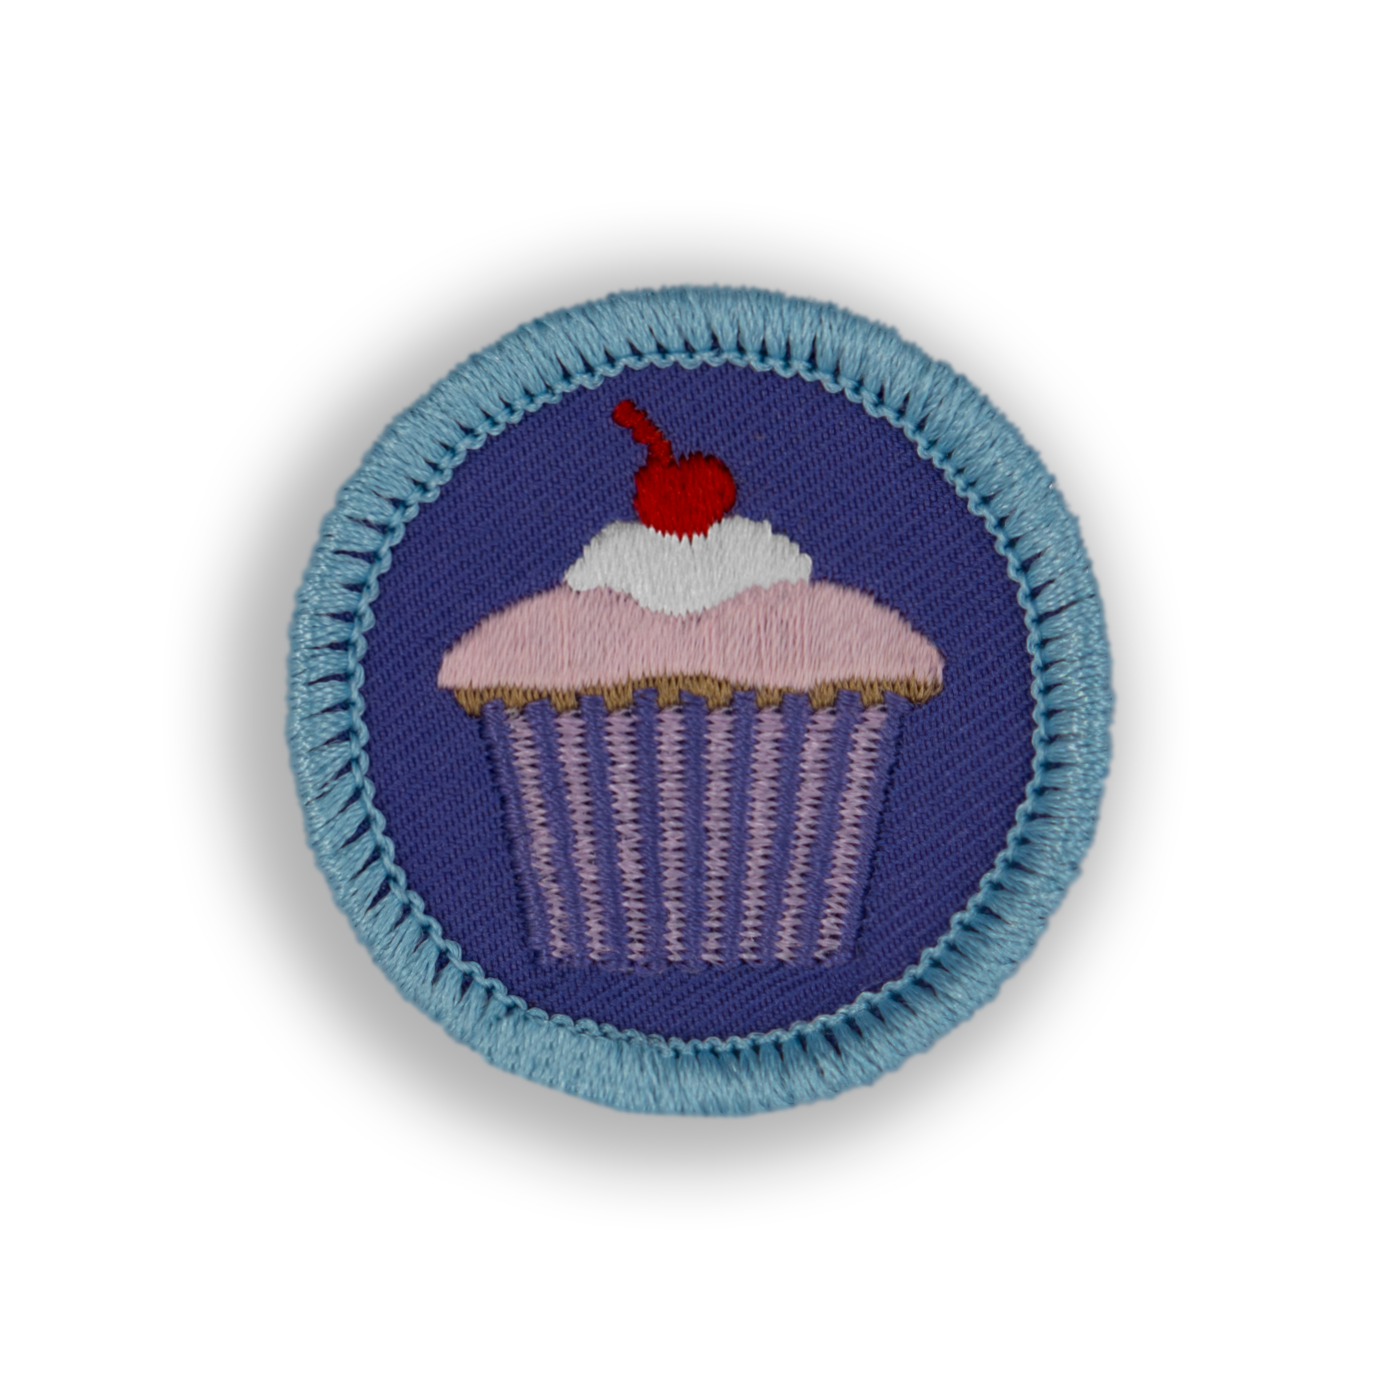 Cupcake Patch | Demerit Wear - Fake Merit Badges